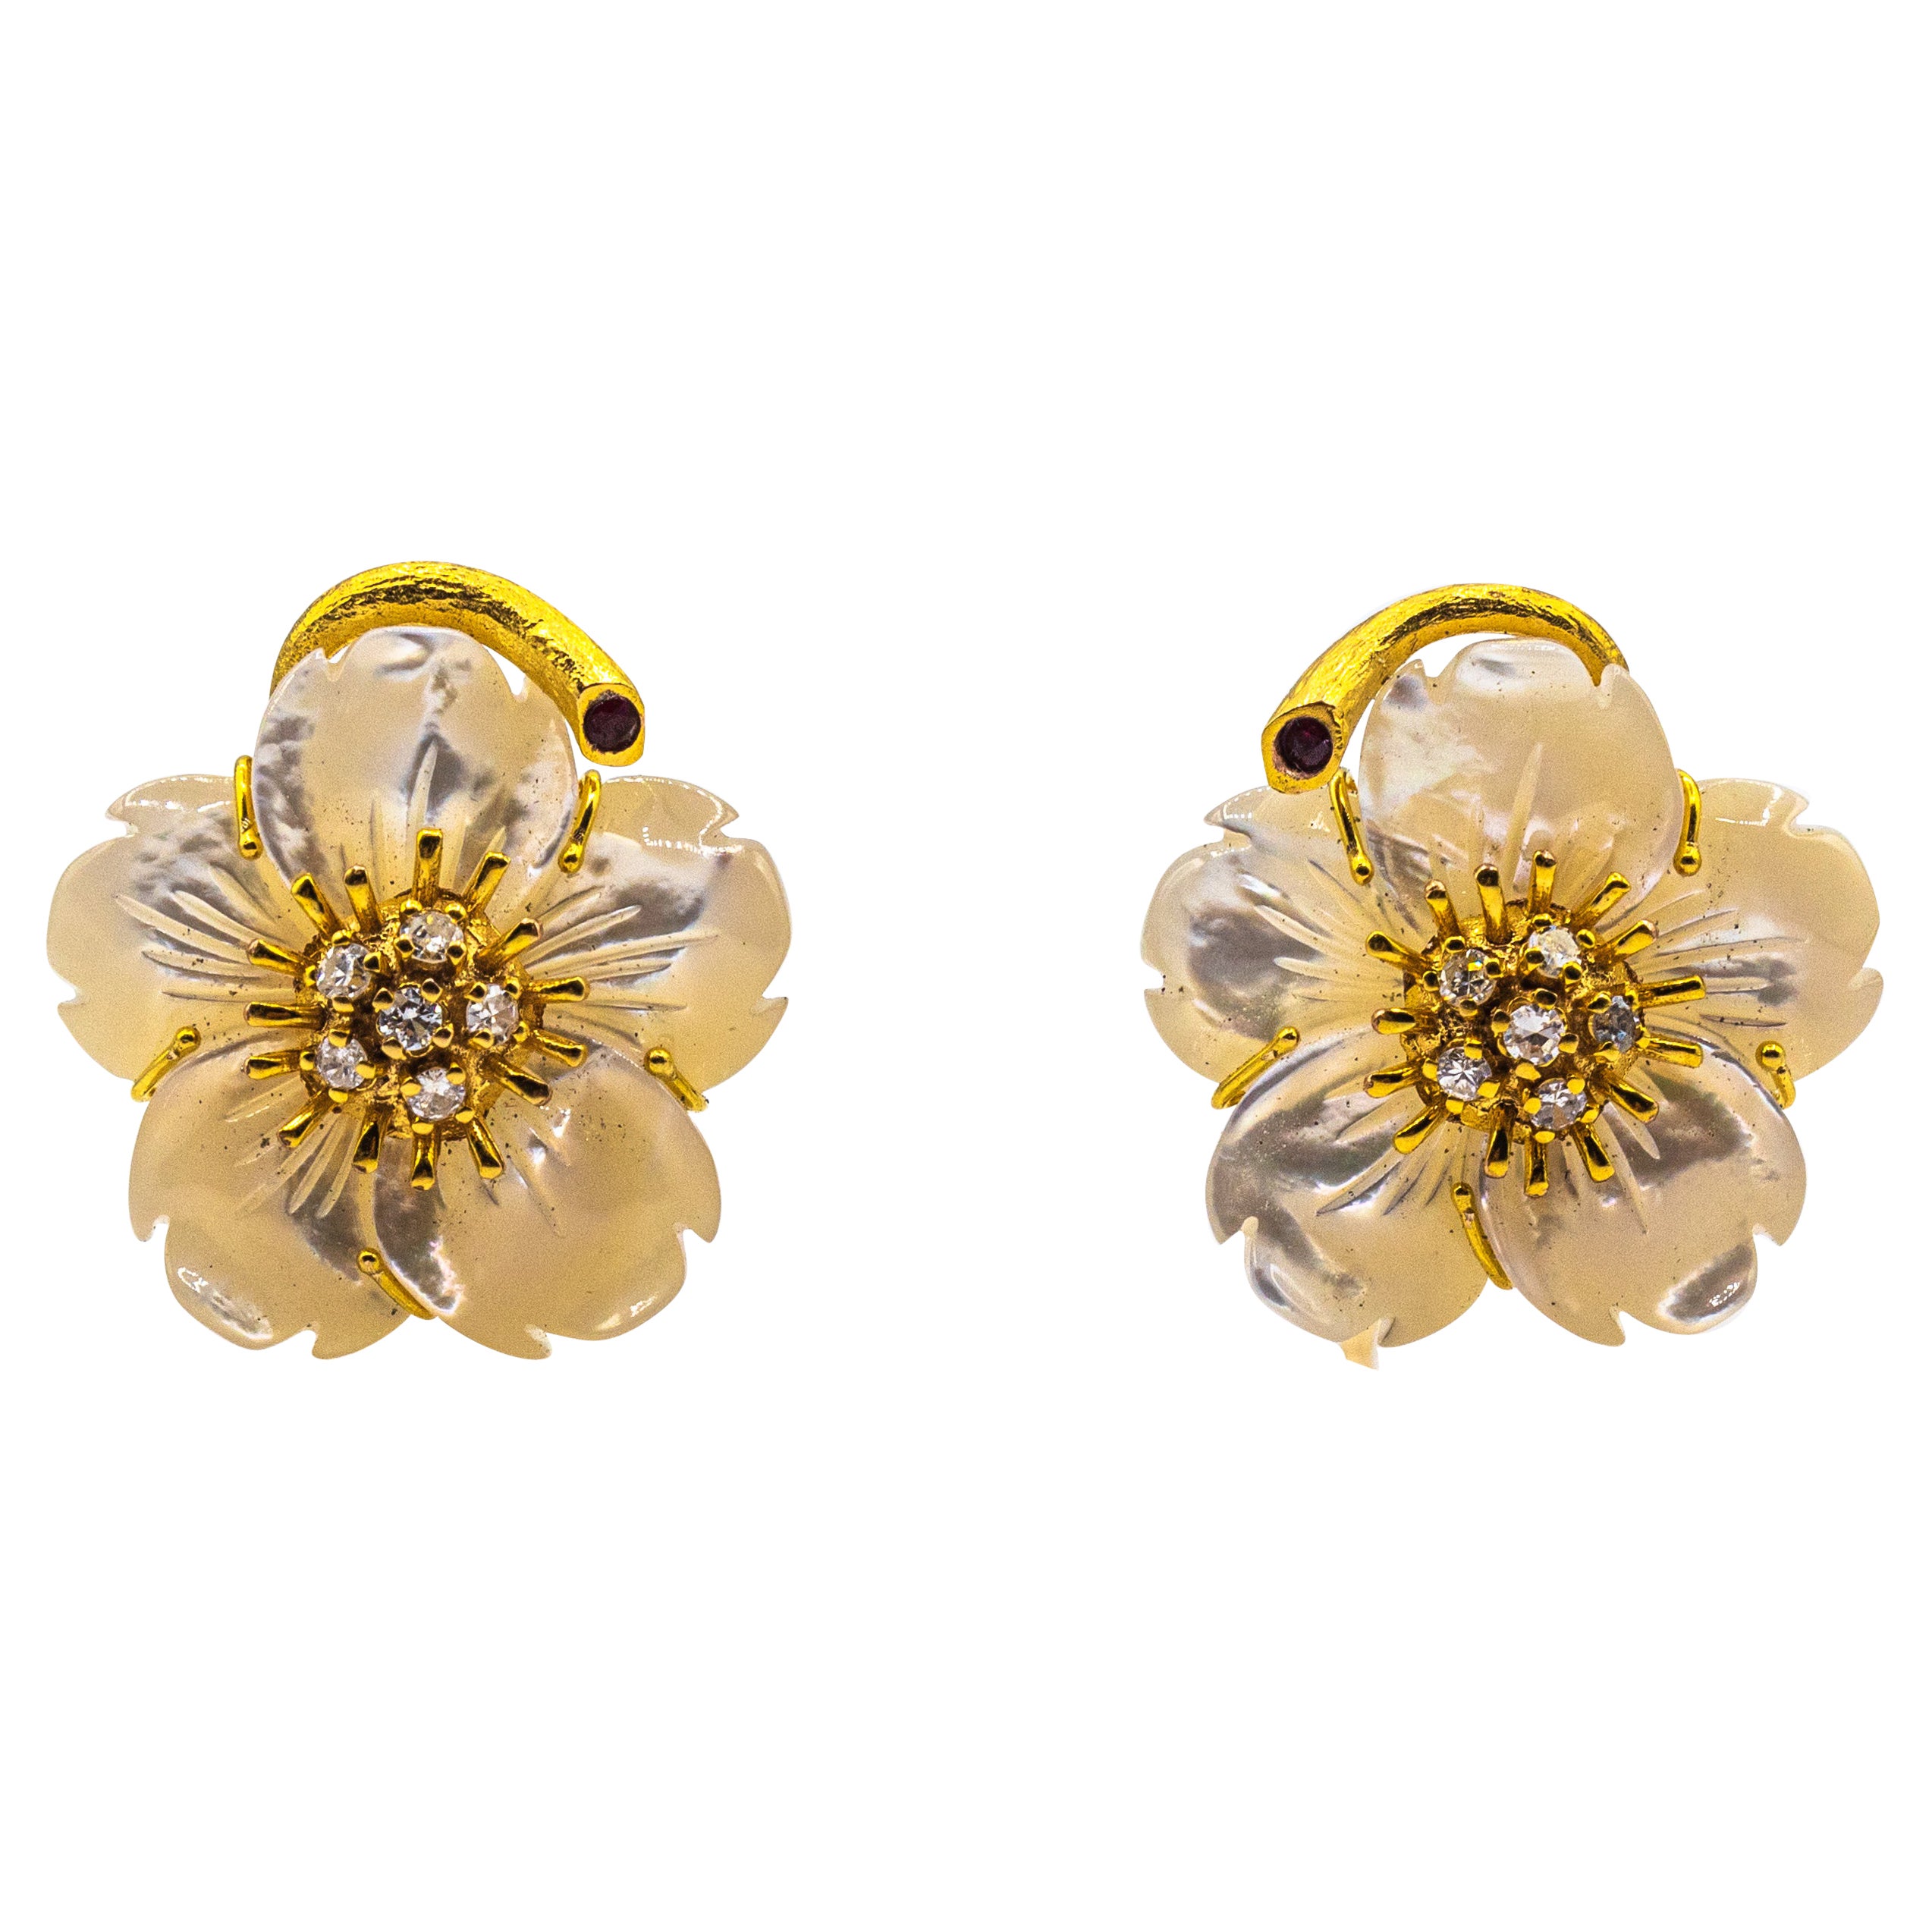 Boucles d'oreilles Art Nouveau fleurs en or jaune, diamants blancs, rubis et nacre